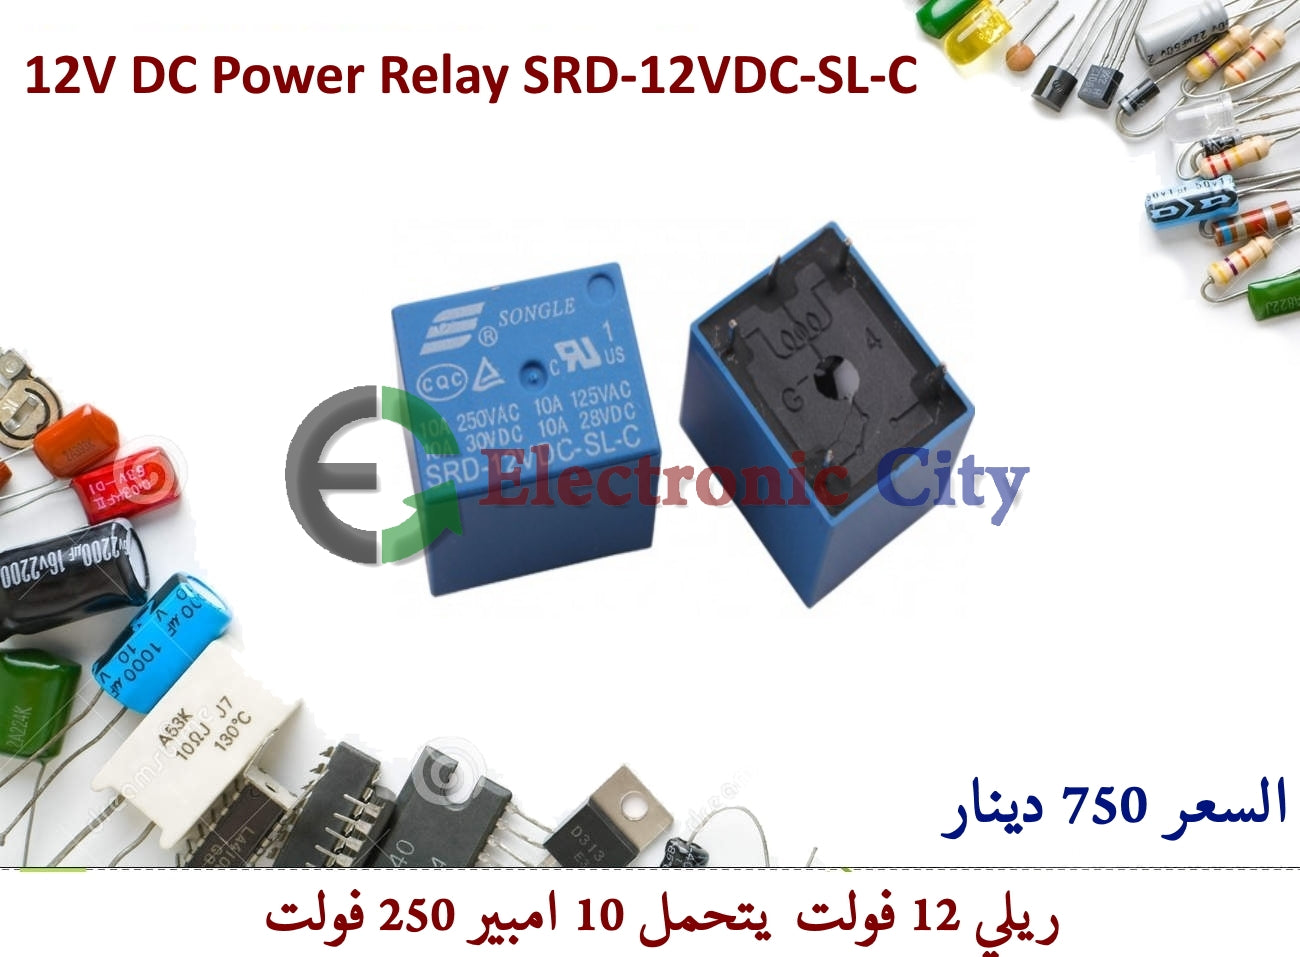 12V DC Power Relay SRD-12VDC-SL-C